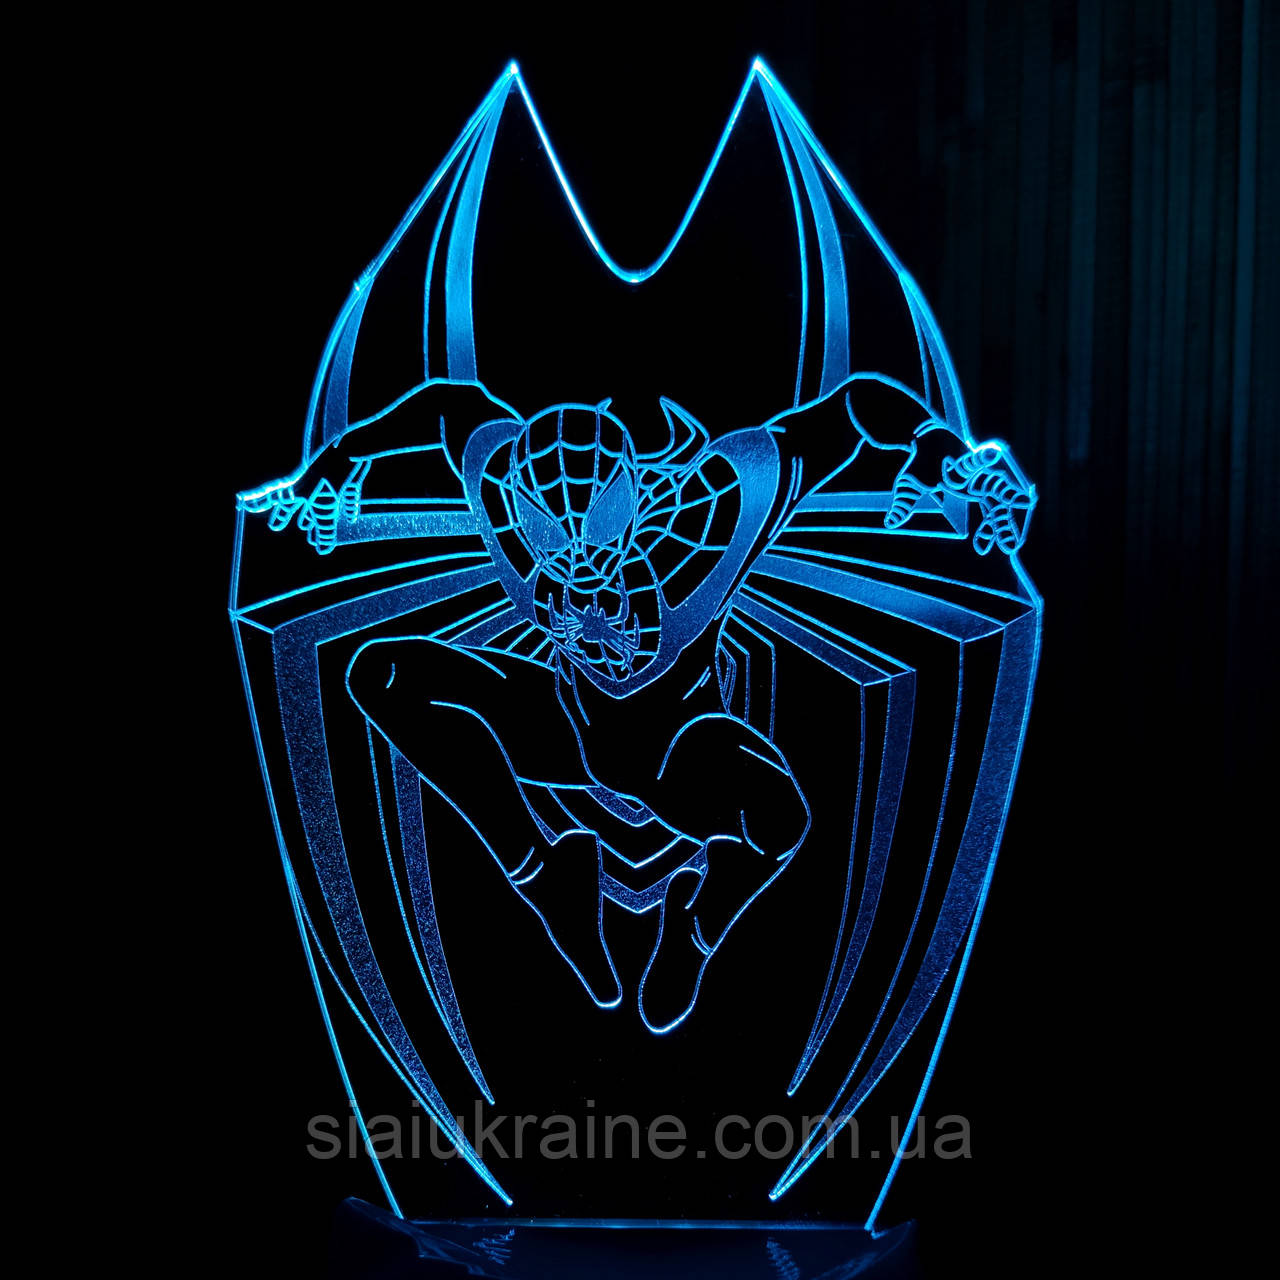 Акриловий 3D світильник-нічник Люди́на-паву́к 3 (Спа́йдермен) синій